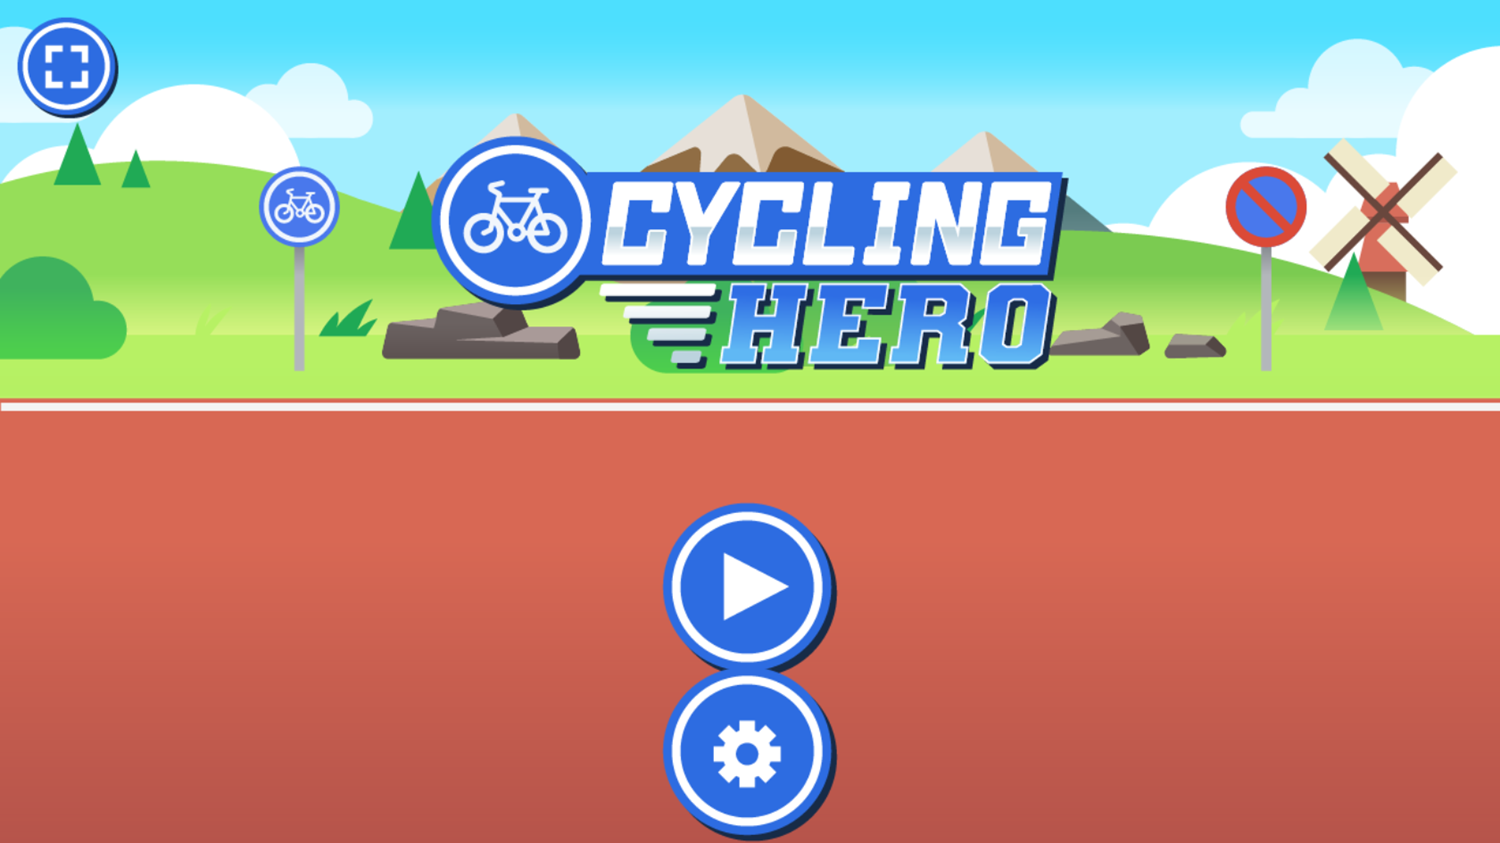 Cycling Hero Game Welcome Screen Screenshot.